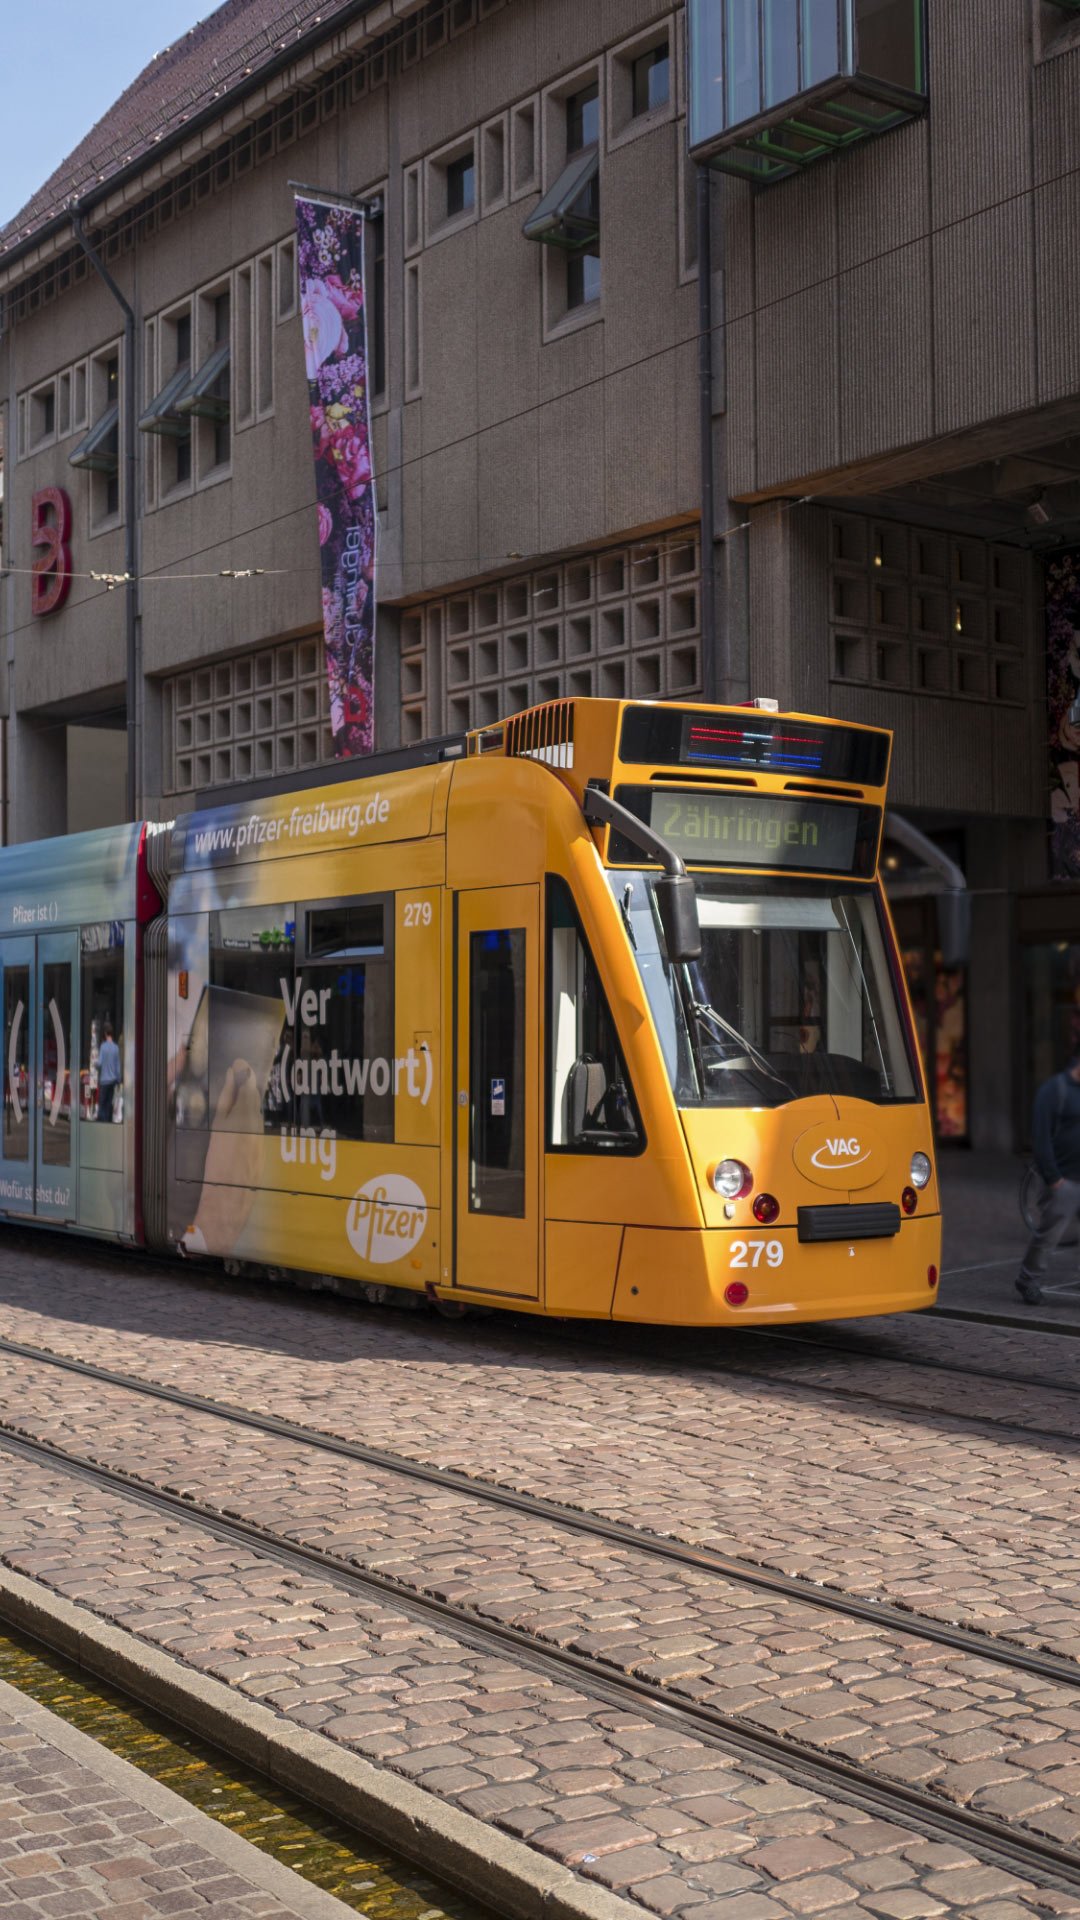 Die Straßenbahn mit dem Pfizer Design fährt in der Kaiser-Joseph-Straße in Freiburg 